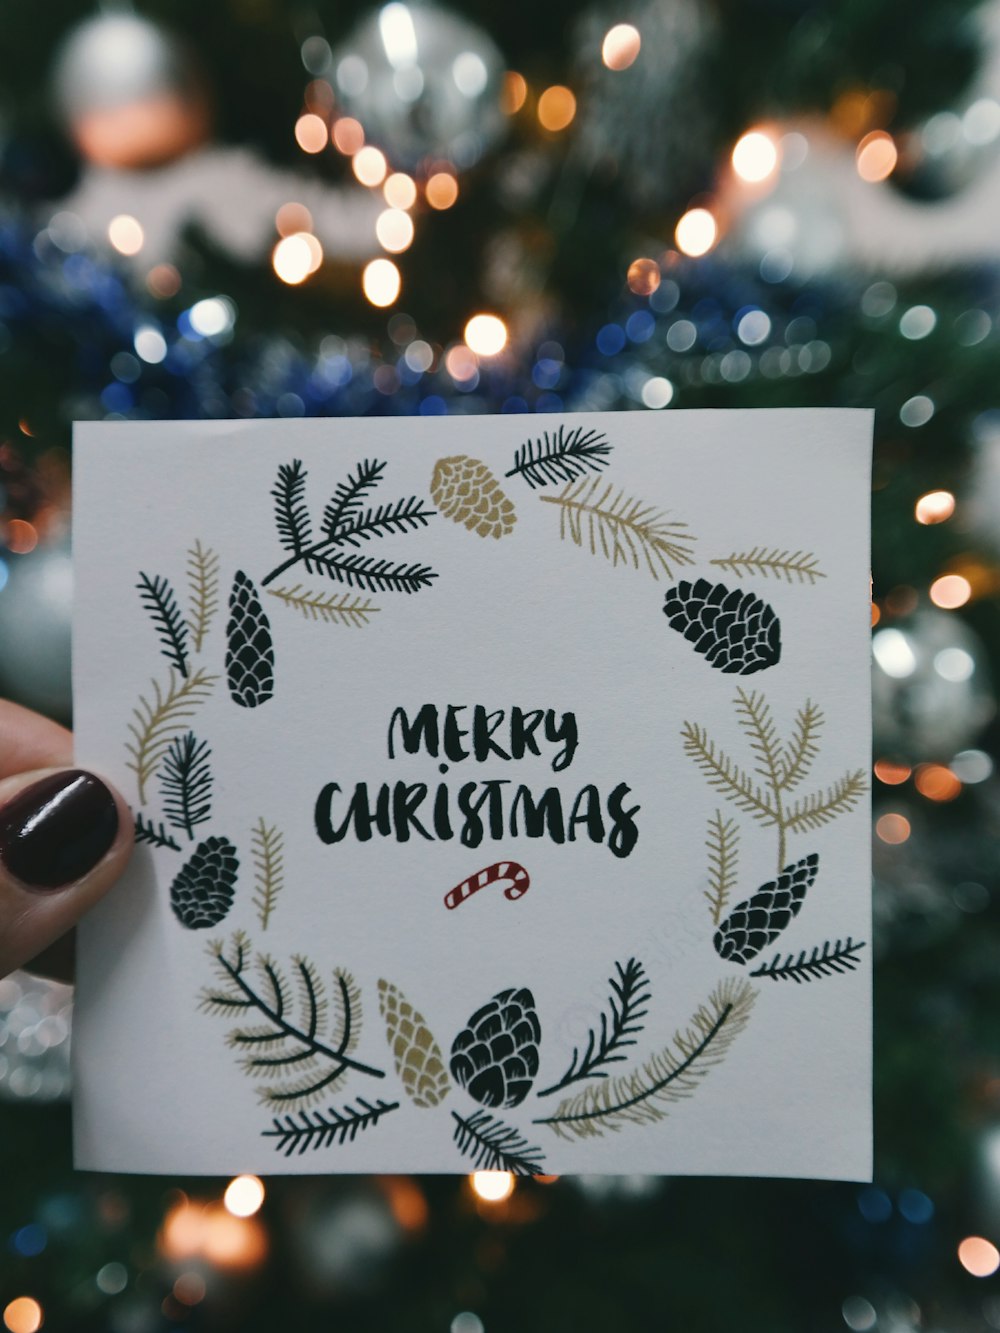 Ein Stück Papier mit der Aufschrift "Frohe Weihnachten" mit einem Kranz drumherum, das vor einem Weihnachtsbaum hochgehalten wird.